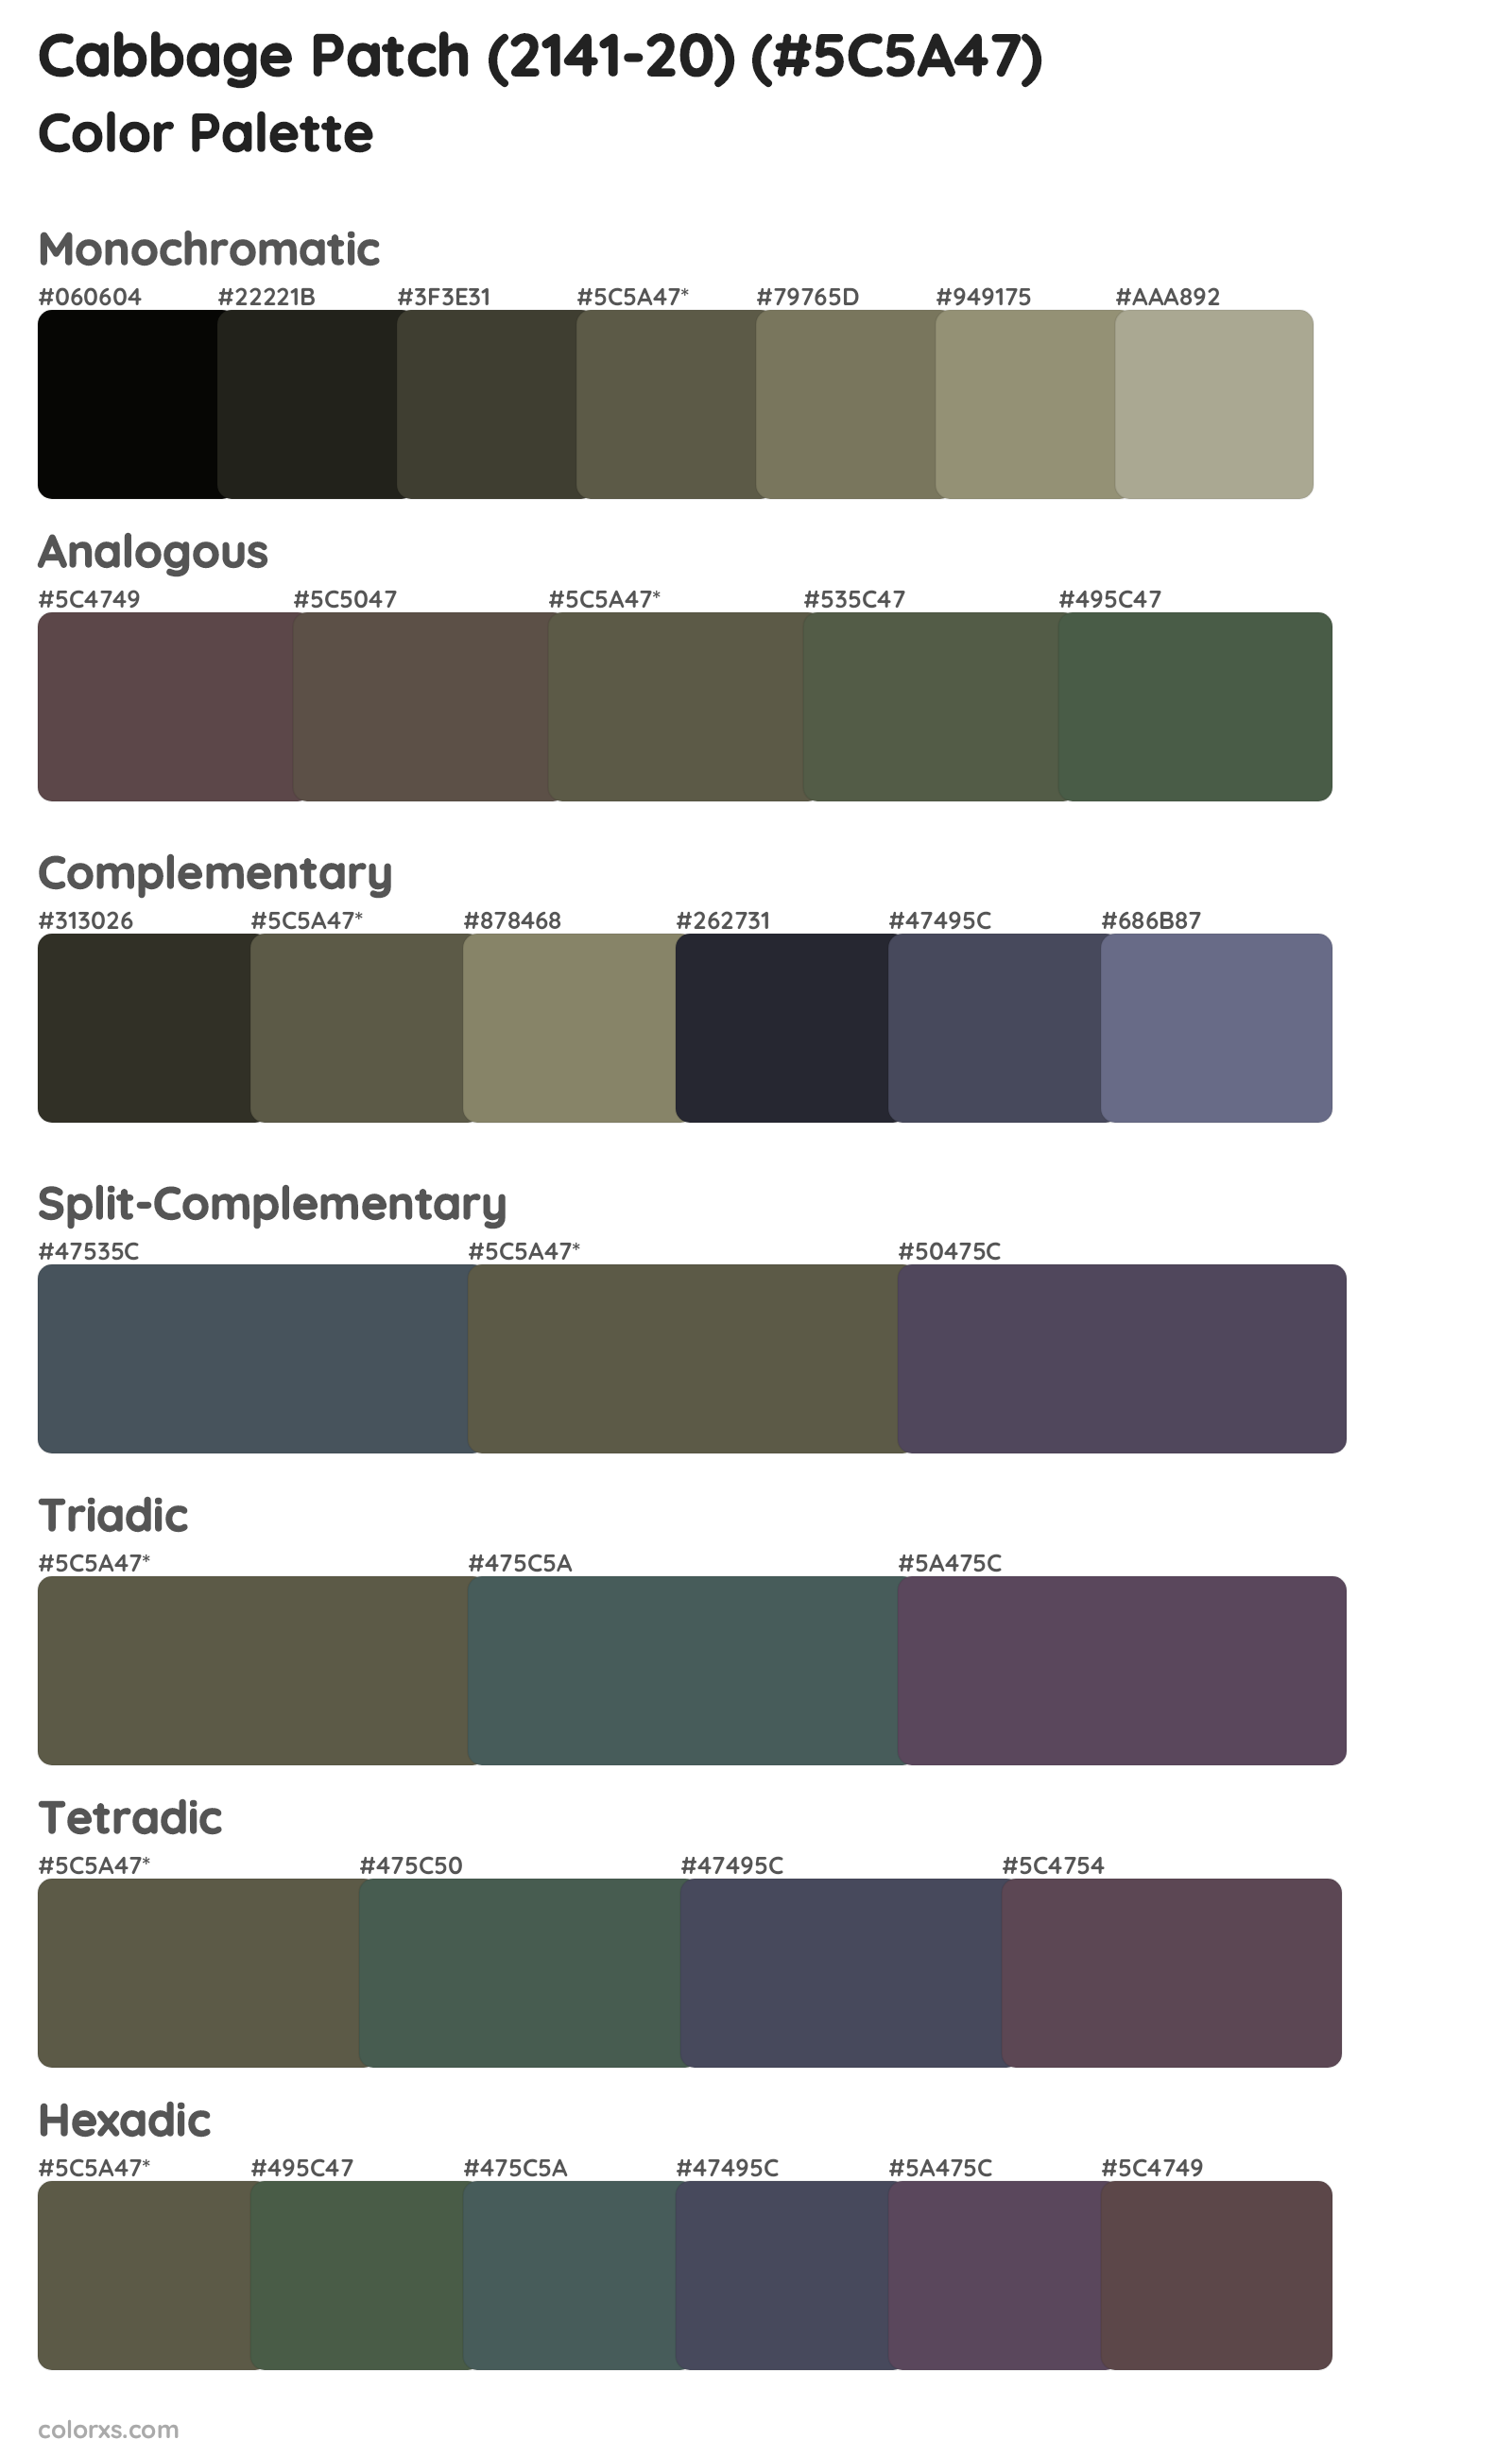 Cabbage Patch (2141-20) Color Scheme Palettes